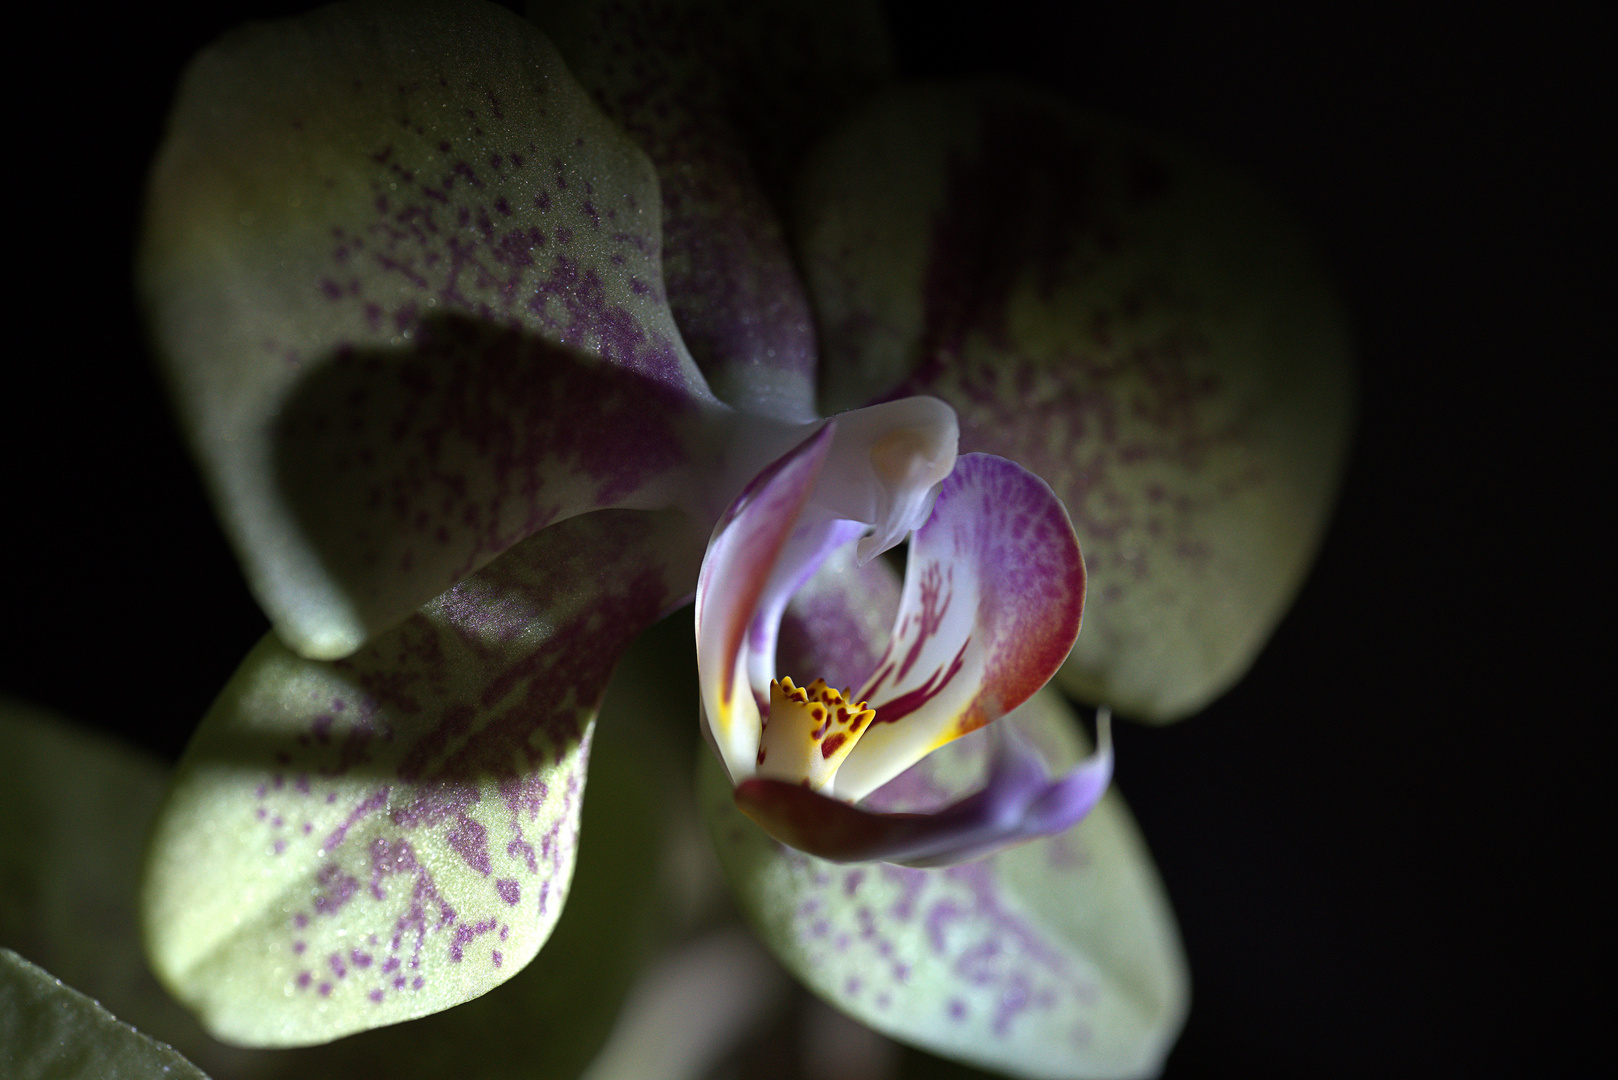 Orchidee - Pflanze, Lebewesen?